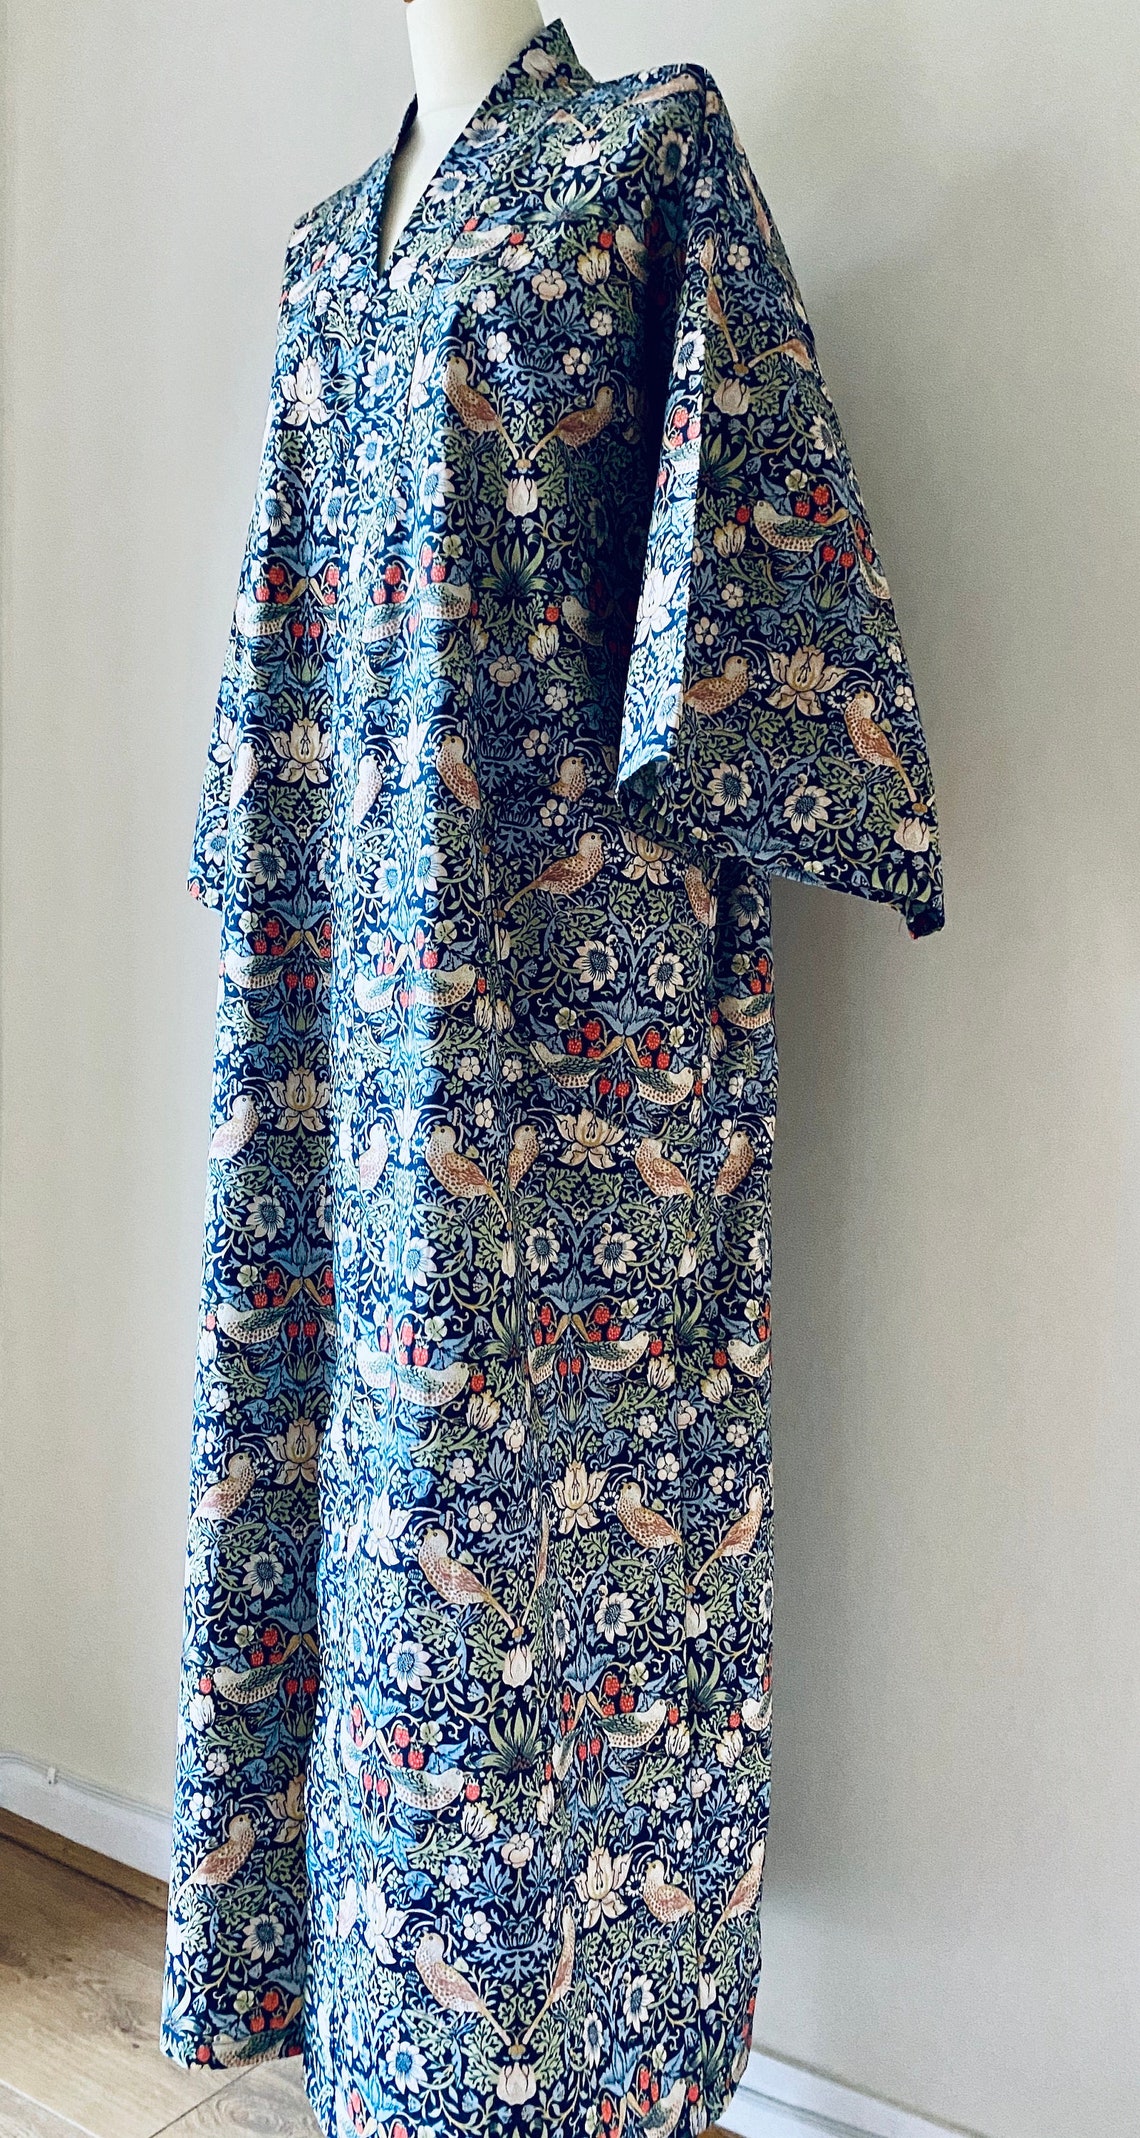 William Morris Kimono Style Cotton Robe Strawberry Thief Blue Made to ...